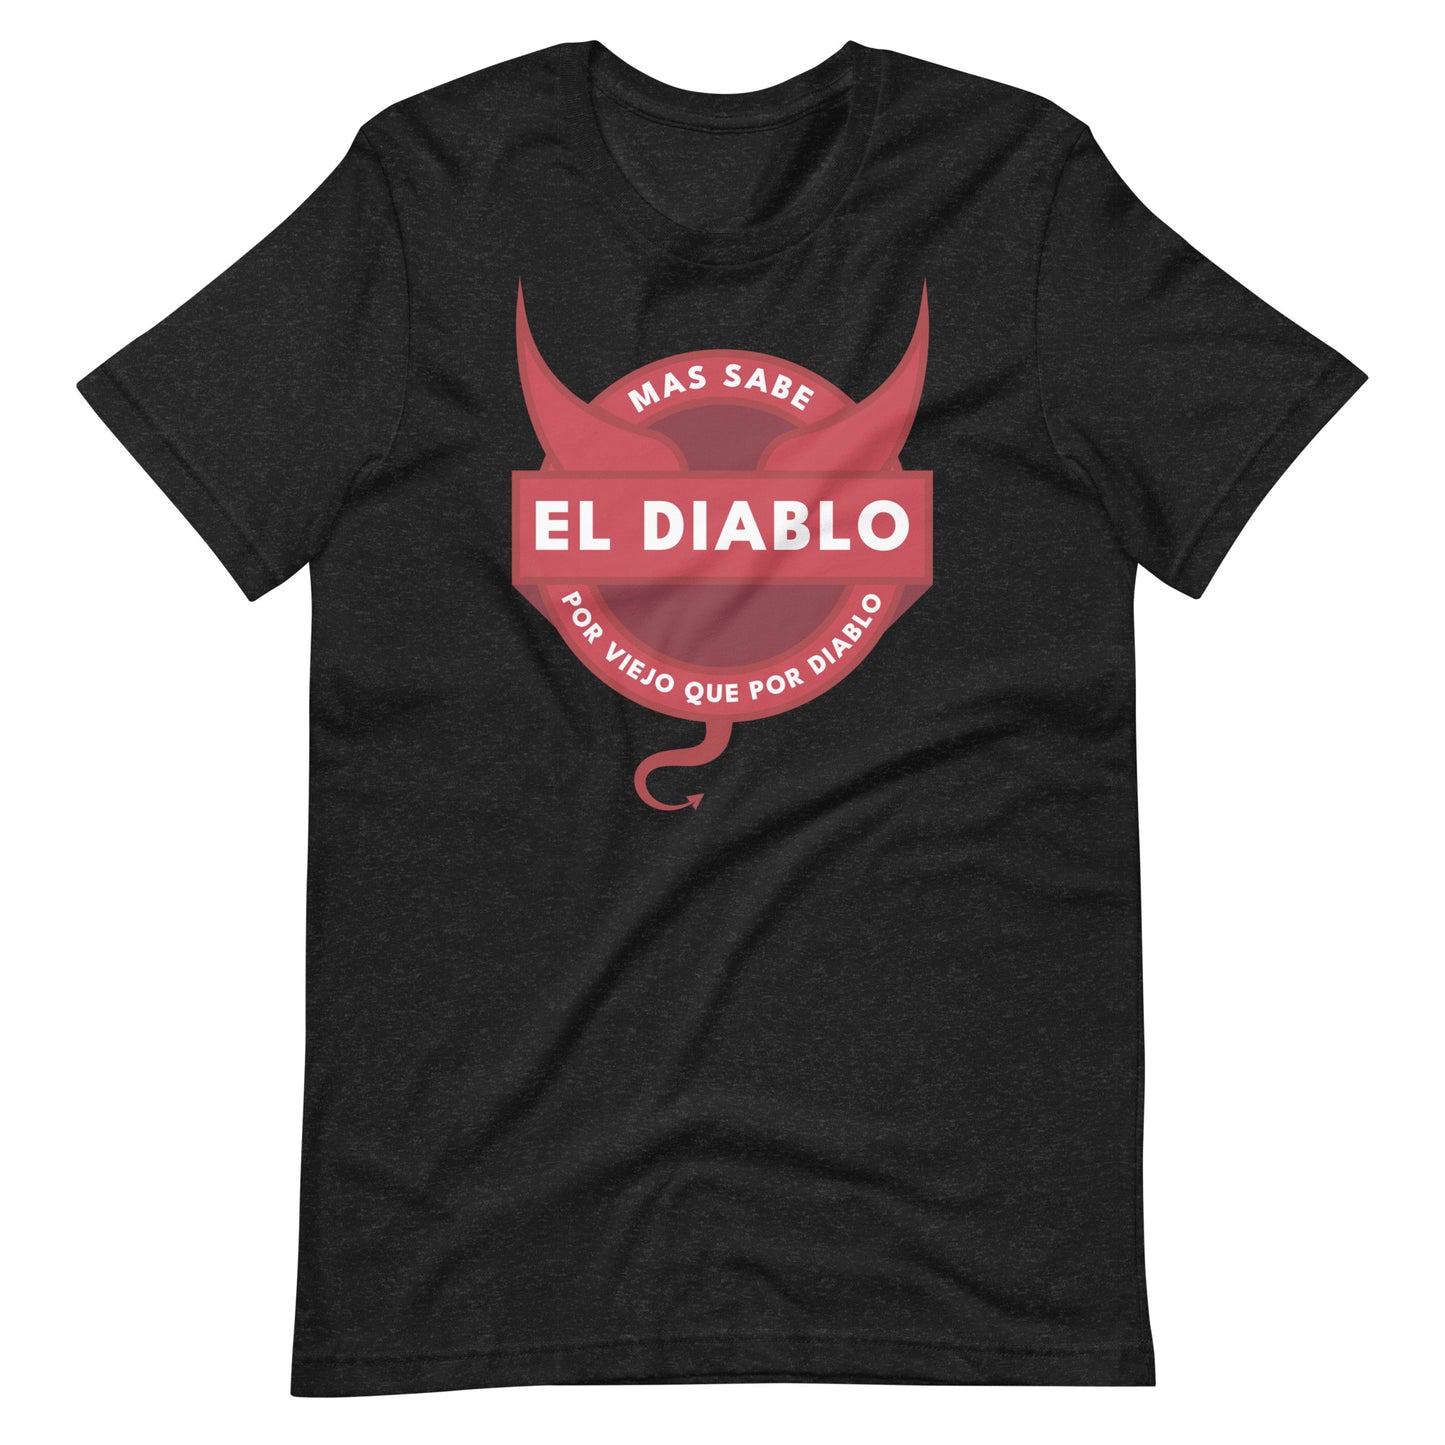 Mas Sabe El Diablo Por Viejo Que Por Diablo Unisex T-shirt